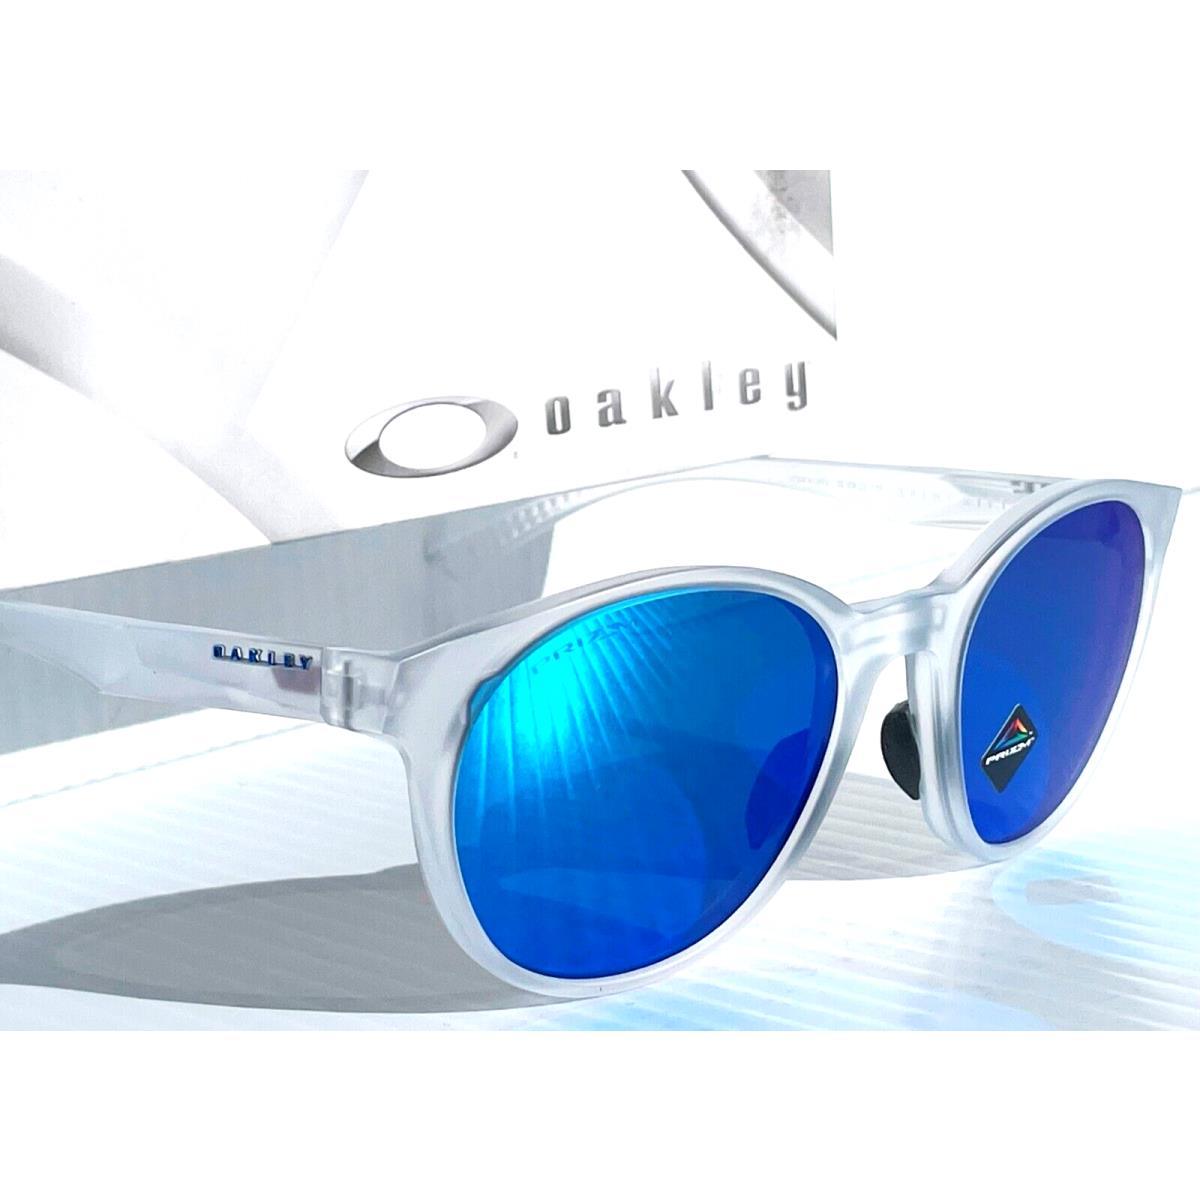 Oakley sunglasses Spindrift - Frame: , Lens: Blue 8